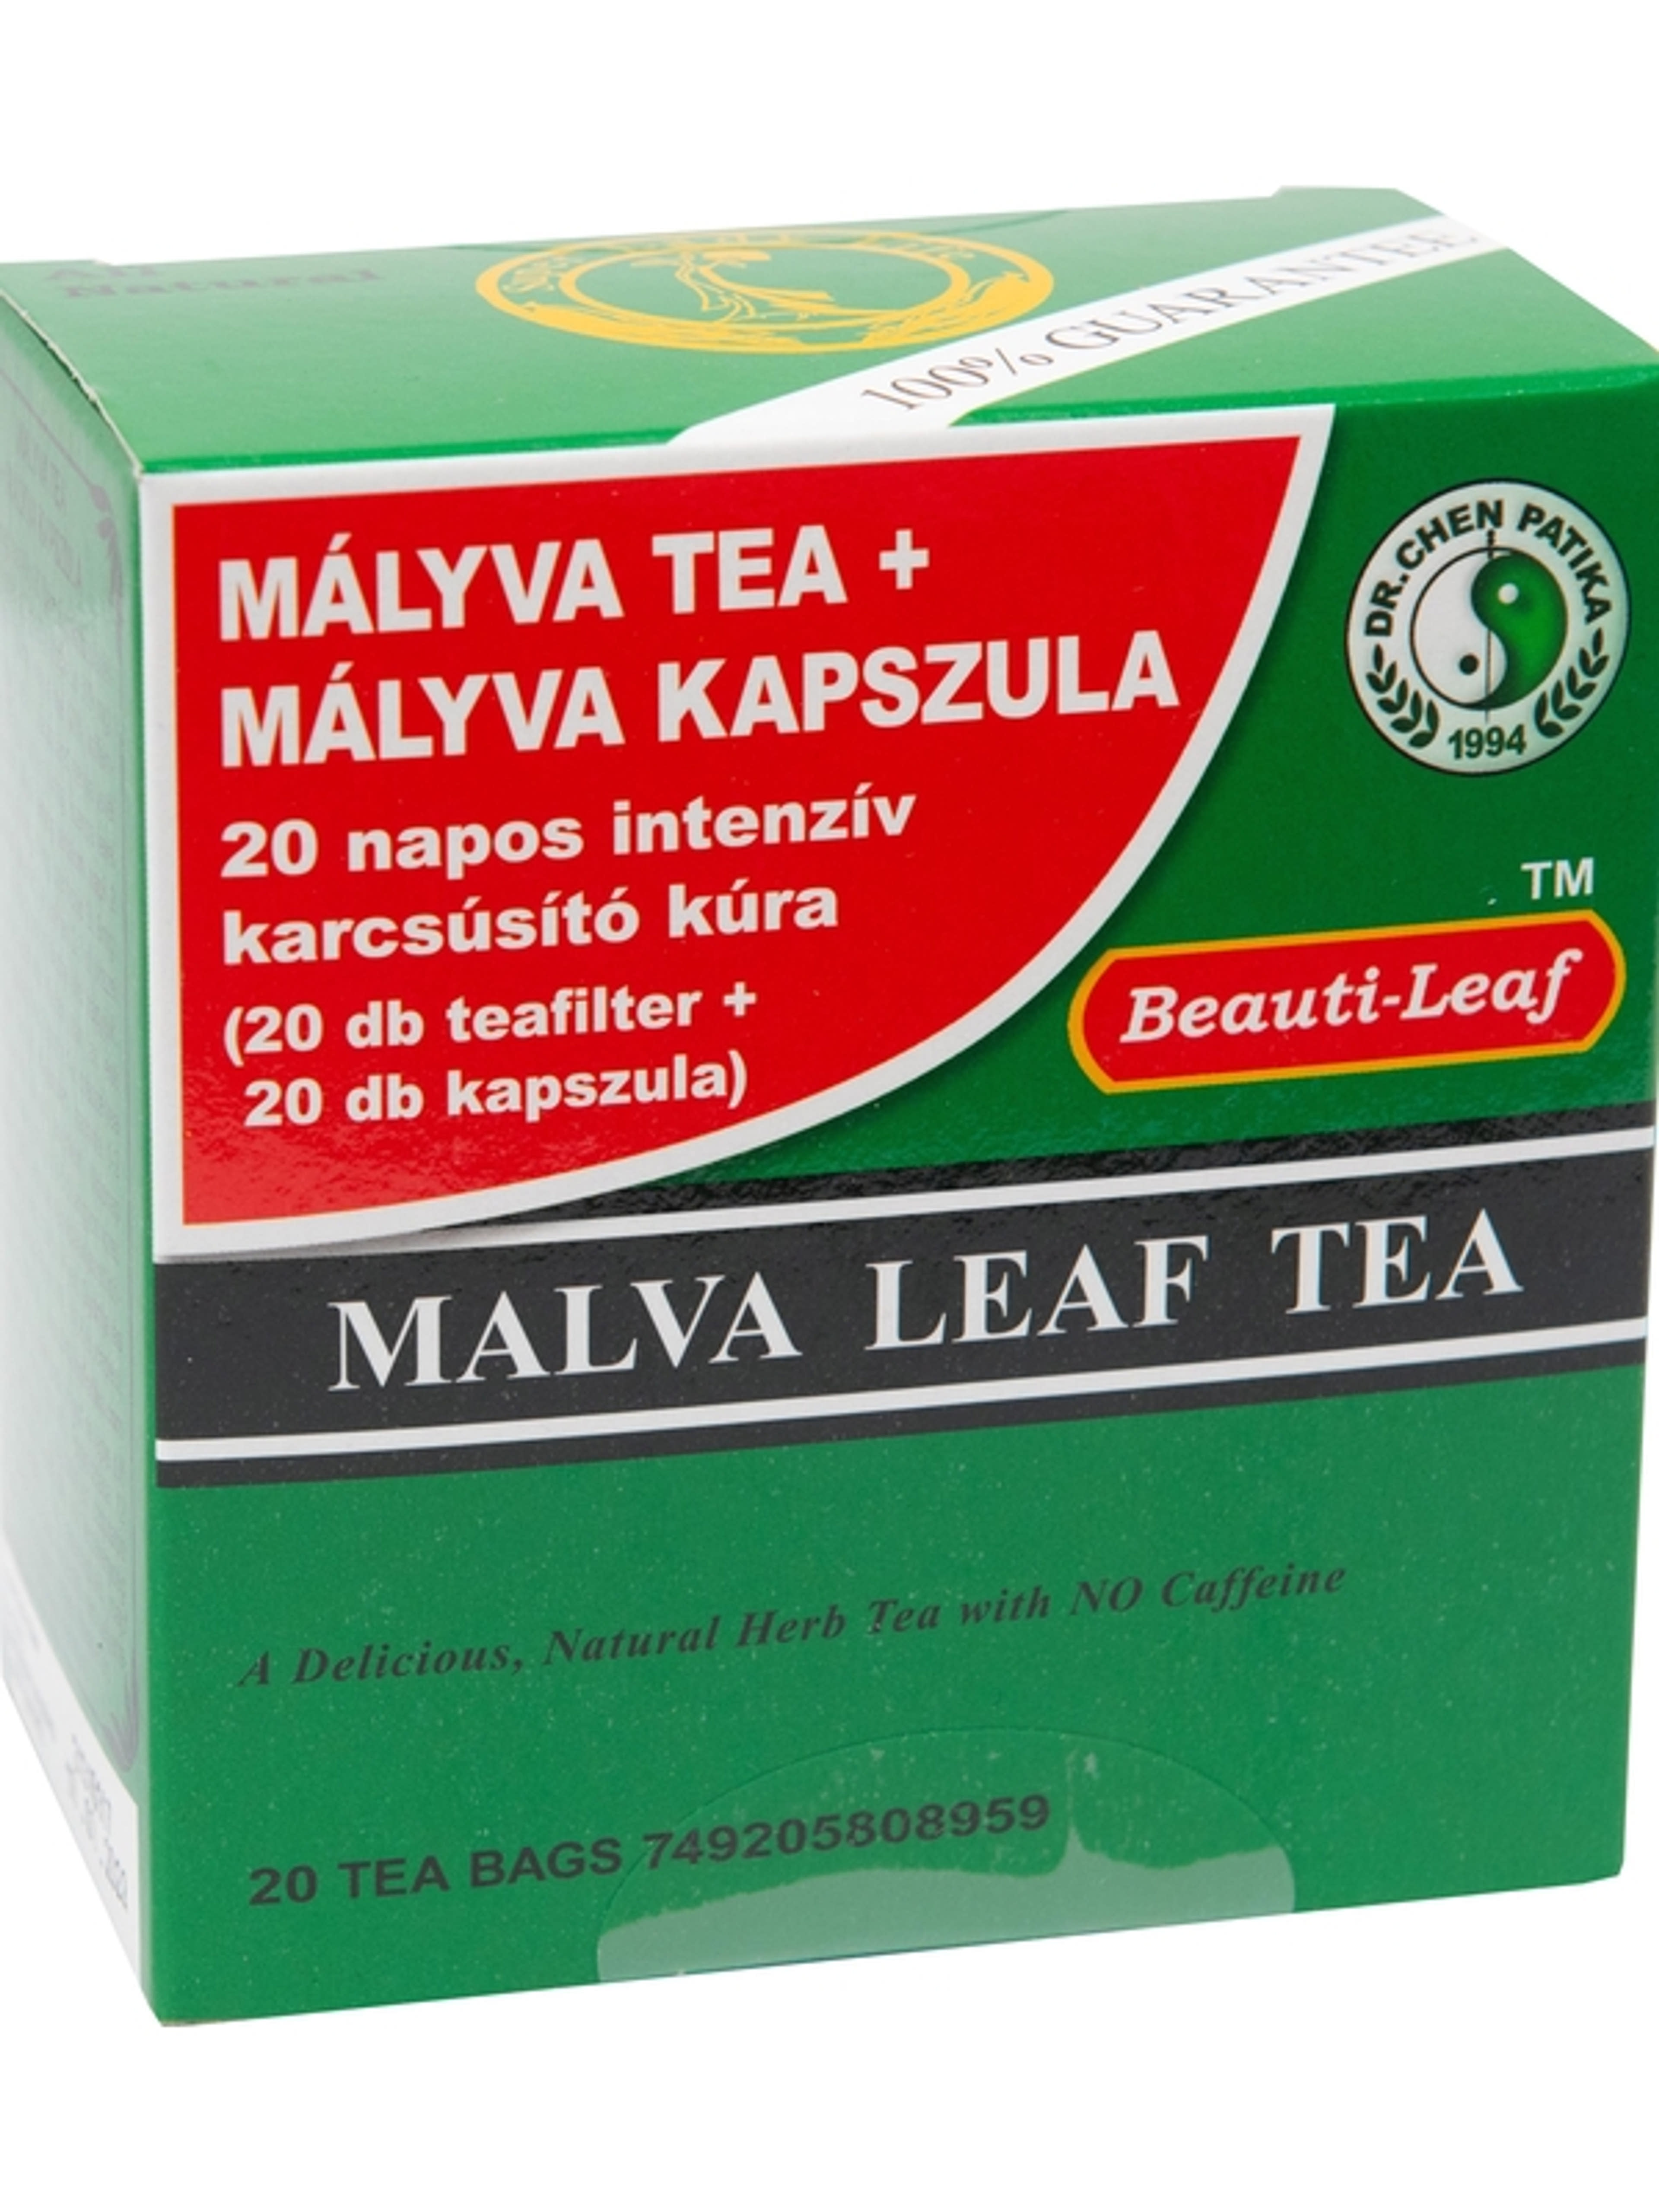 Dr.Chen Patika mályva tea+kapszula 20 g - 20 db